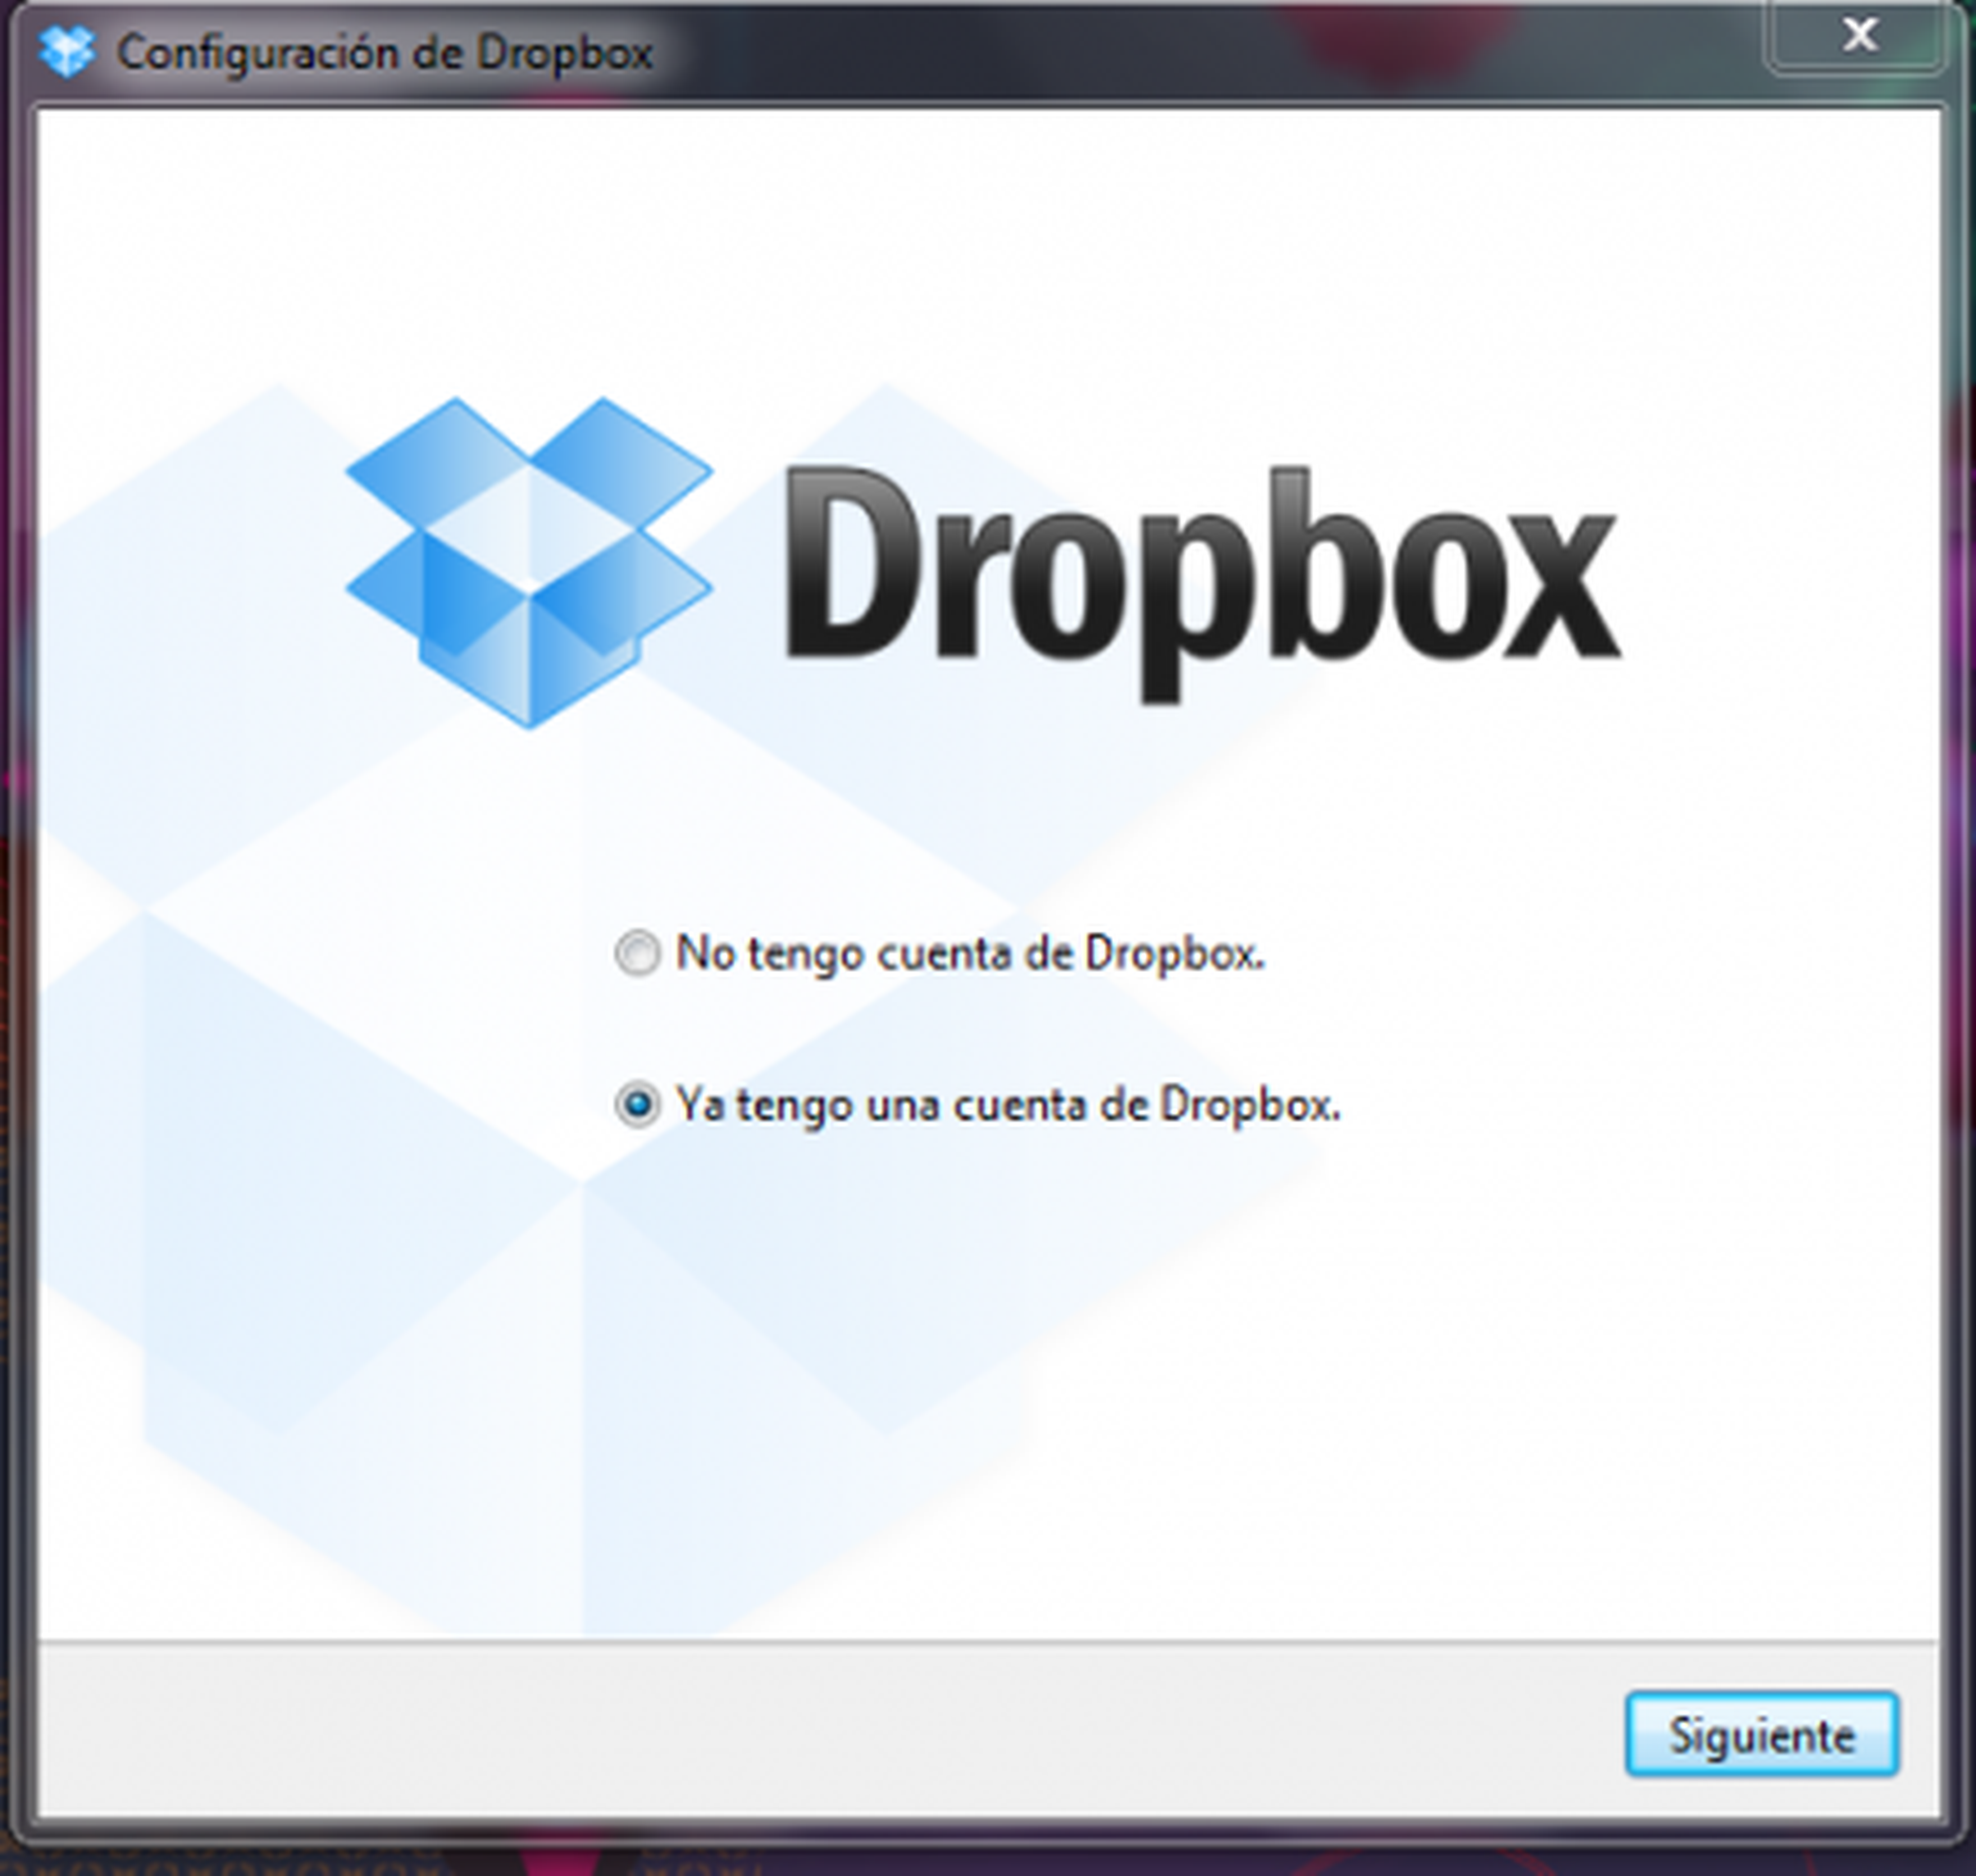 Configura tu cuenta de Dropbox en el ordenador